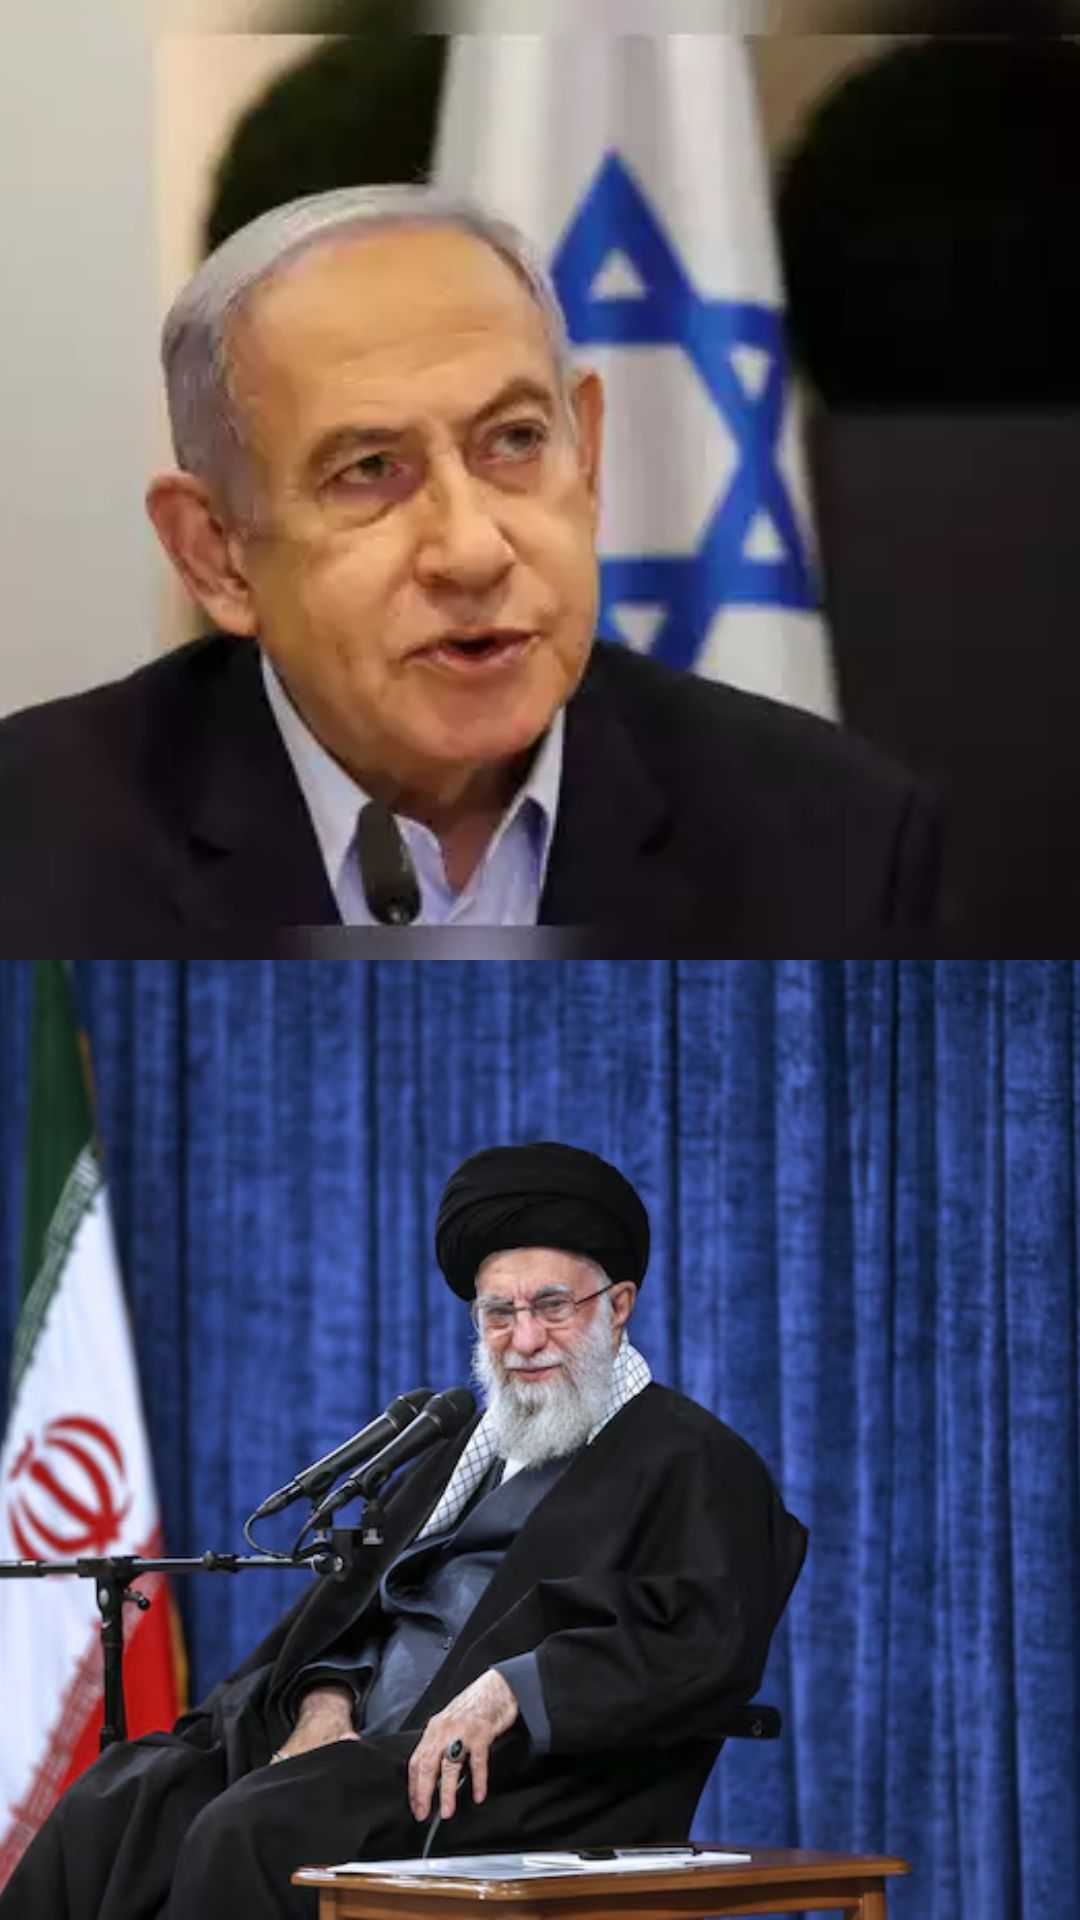 कितनी साल पुरानी है Israel और Iran में दुश्मनी की जड़, दोनों देश कैसे बने जानी दुश्मन